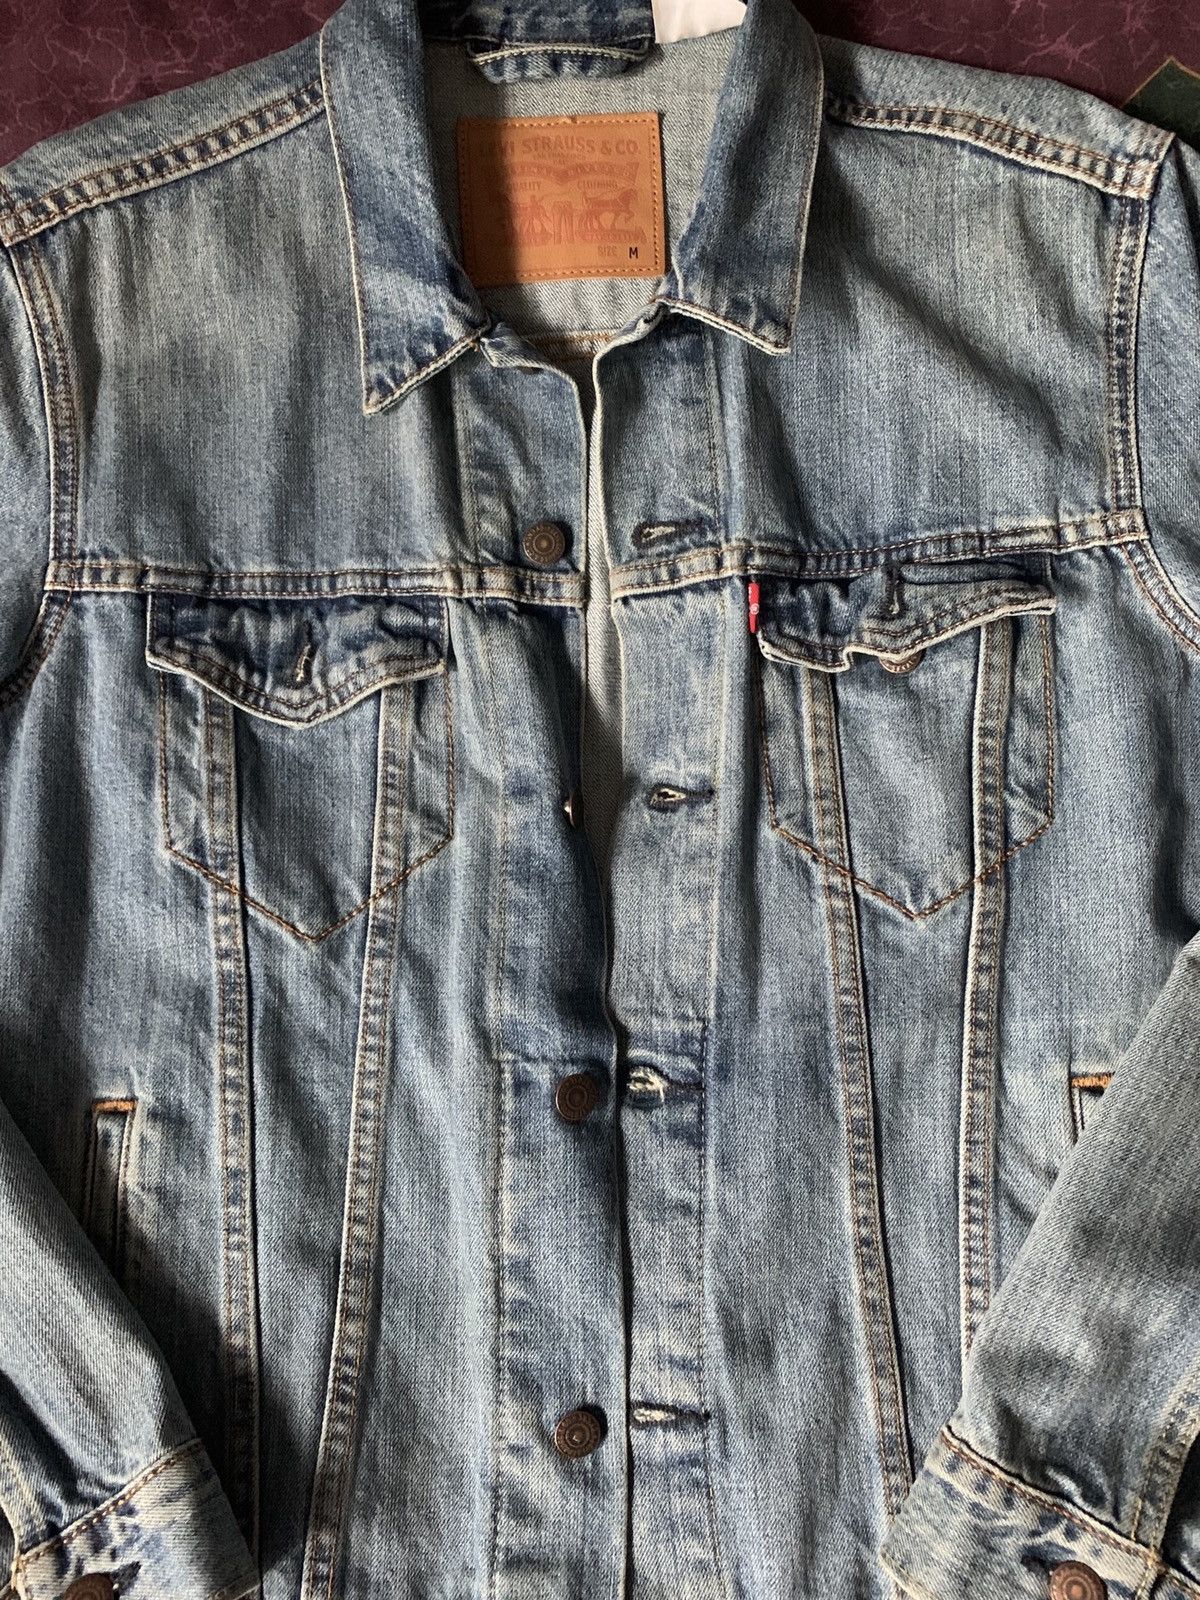 Levi's Vintage Clothing Levi’s Light Stonewashed Denim Trucker Jacket Size US M / EU 48-50 / 2 - 3 Thumbnail